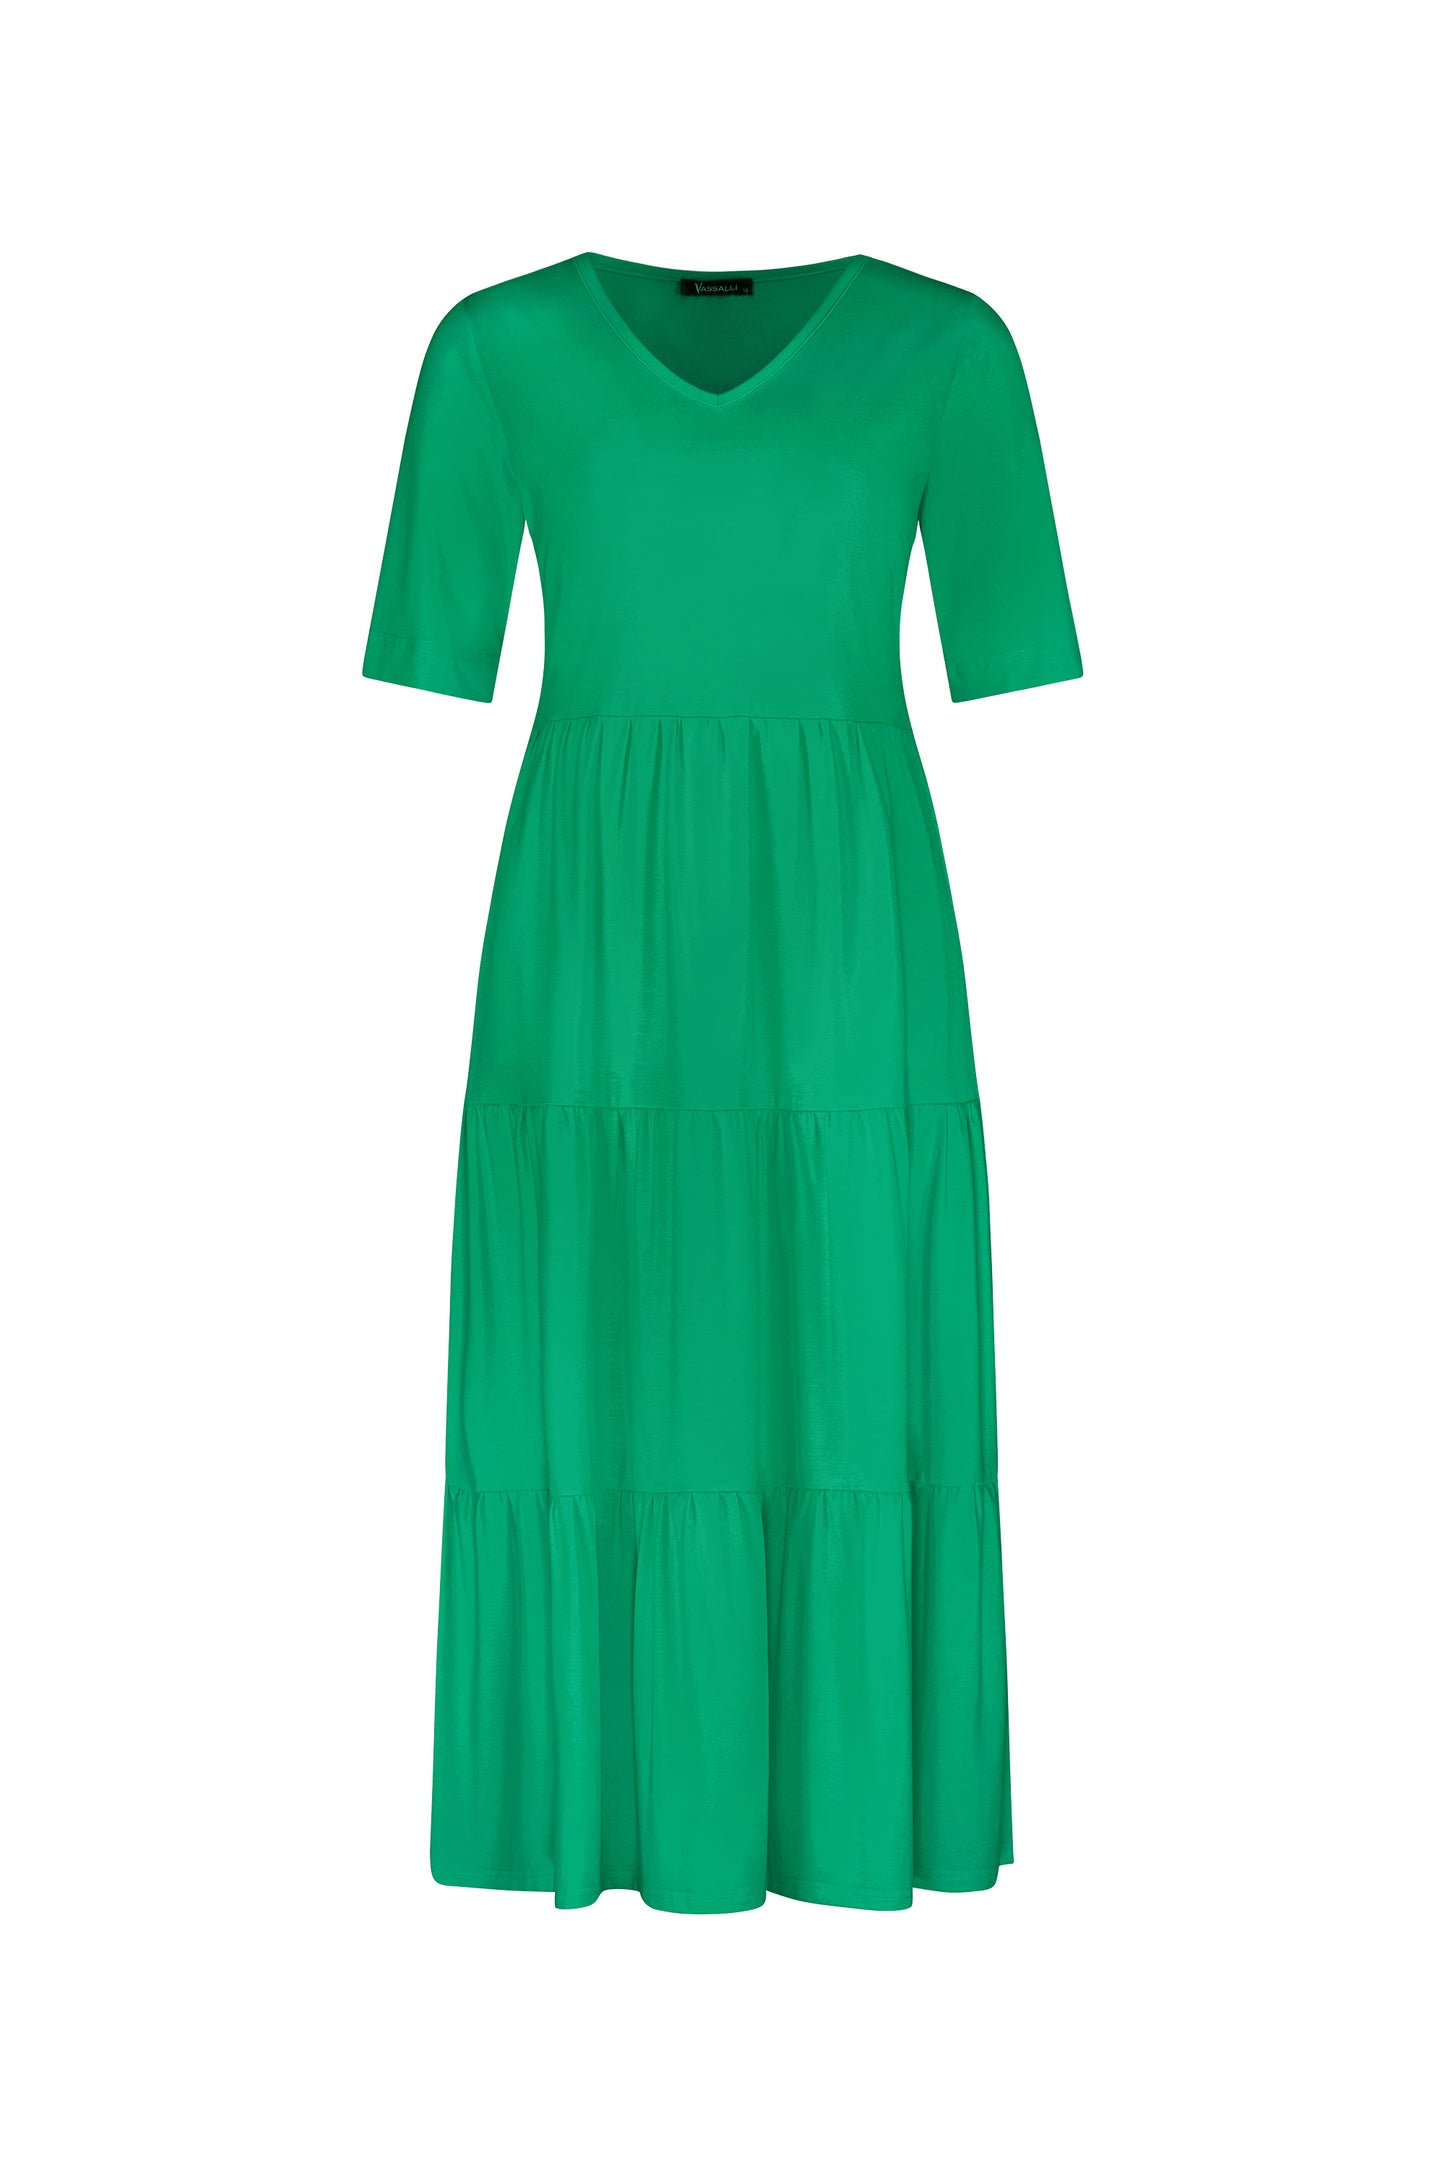 Vassalli - 6076 - V Neck Tiered Dress - 4 Colourways  - 50% Off